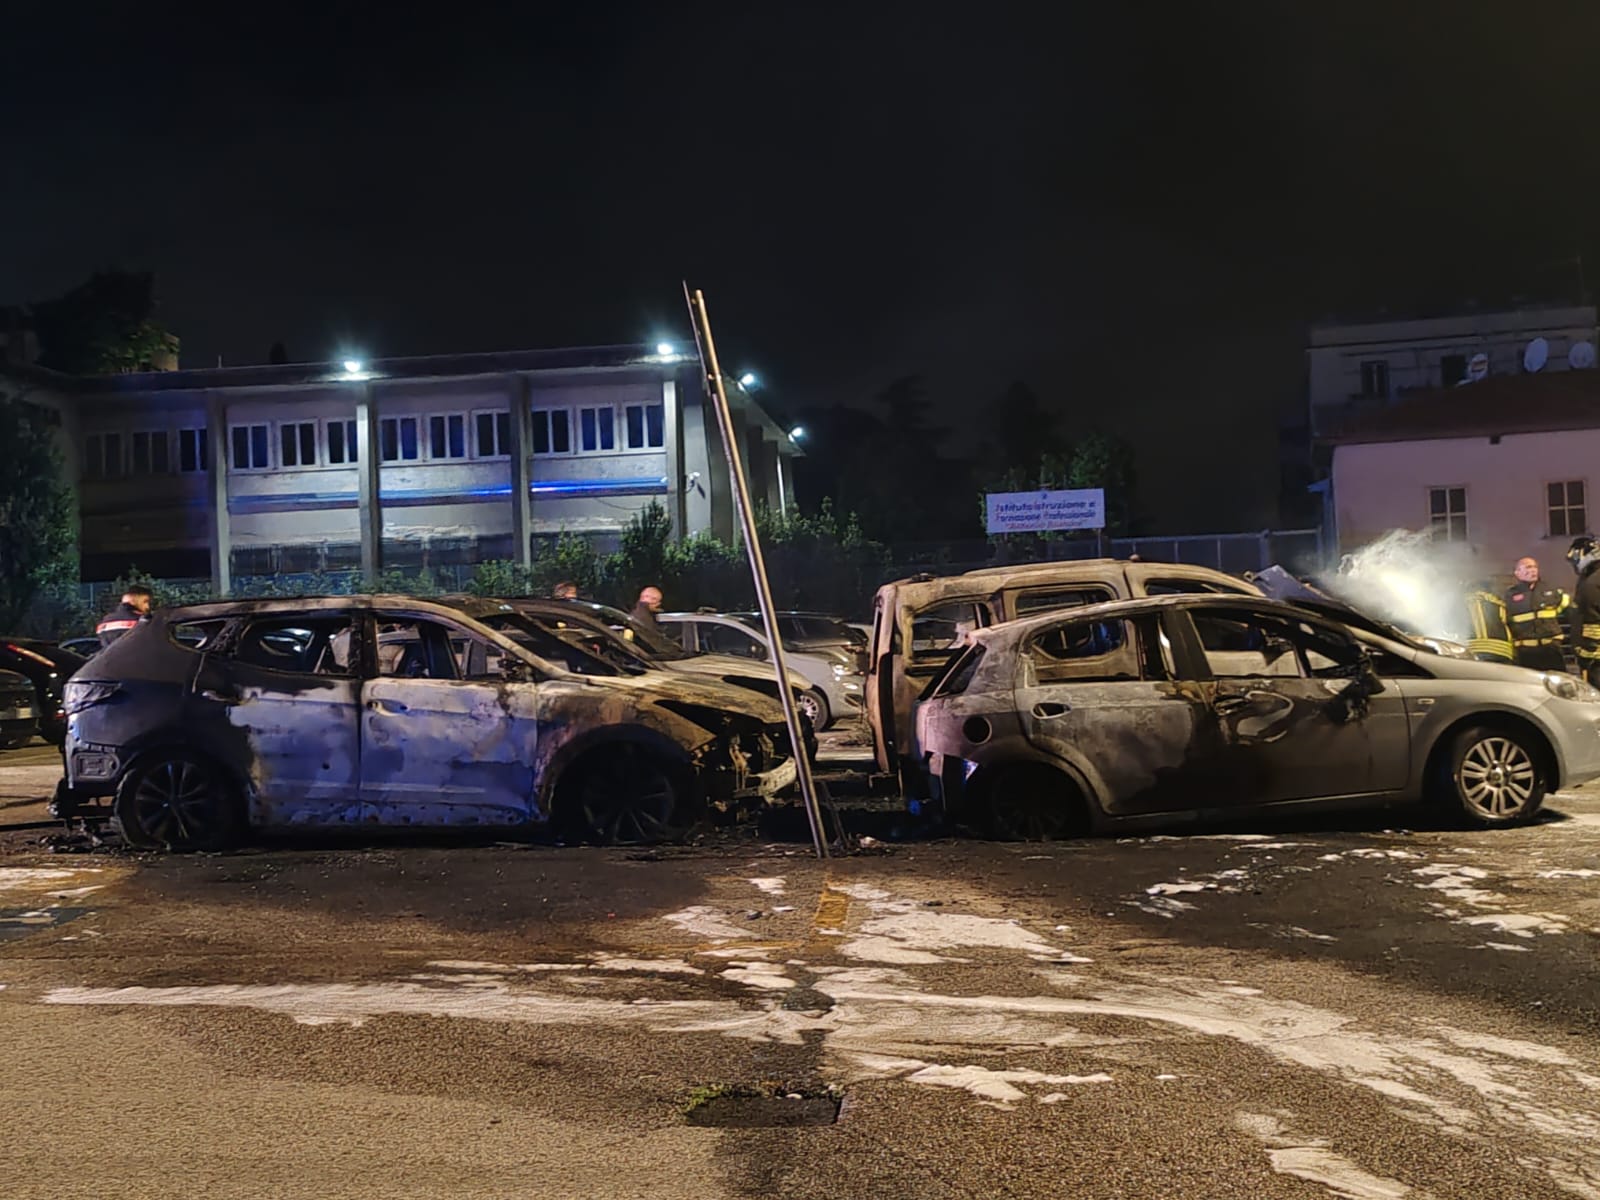 Tivoli, di nuovo auto in fiamme: piromane ormai senza freni (VIDEO) 1